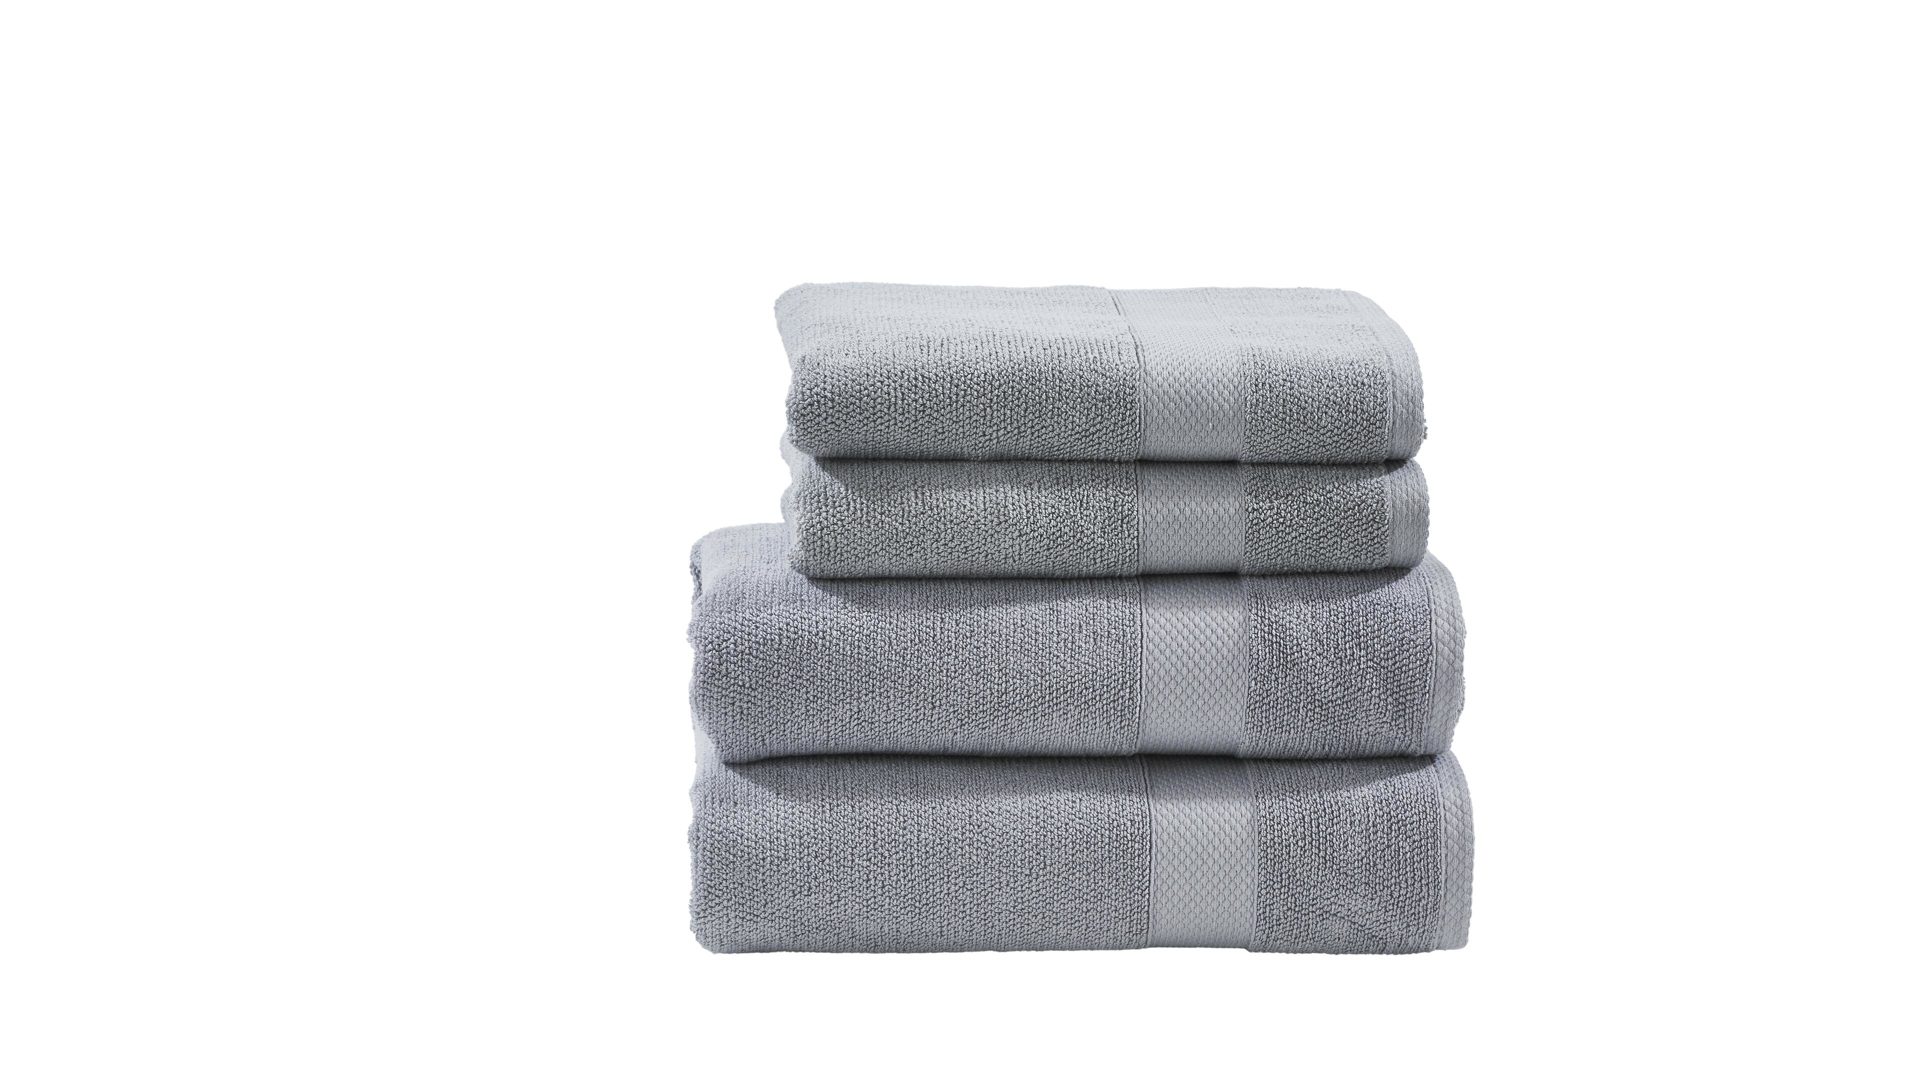 Handtuch-Set Done® by karabel home company aus Stoff in Grau DONE® Handtuch-Set Deluxe silberfarbene Baumwolle – vierteilig